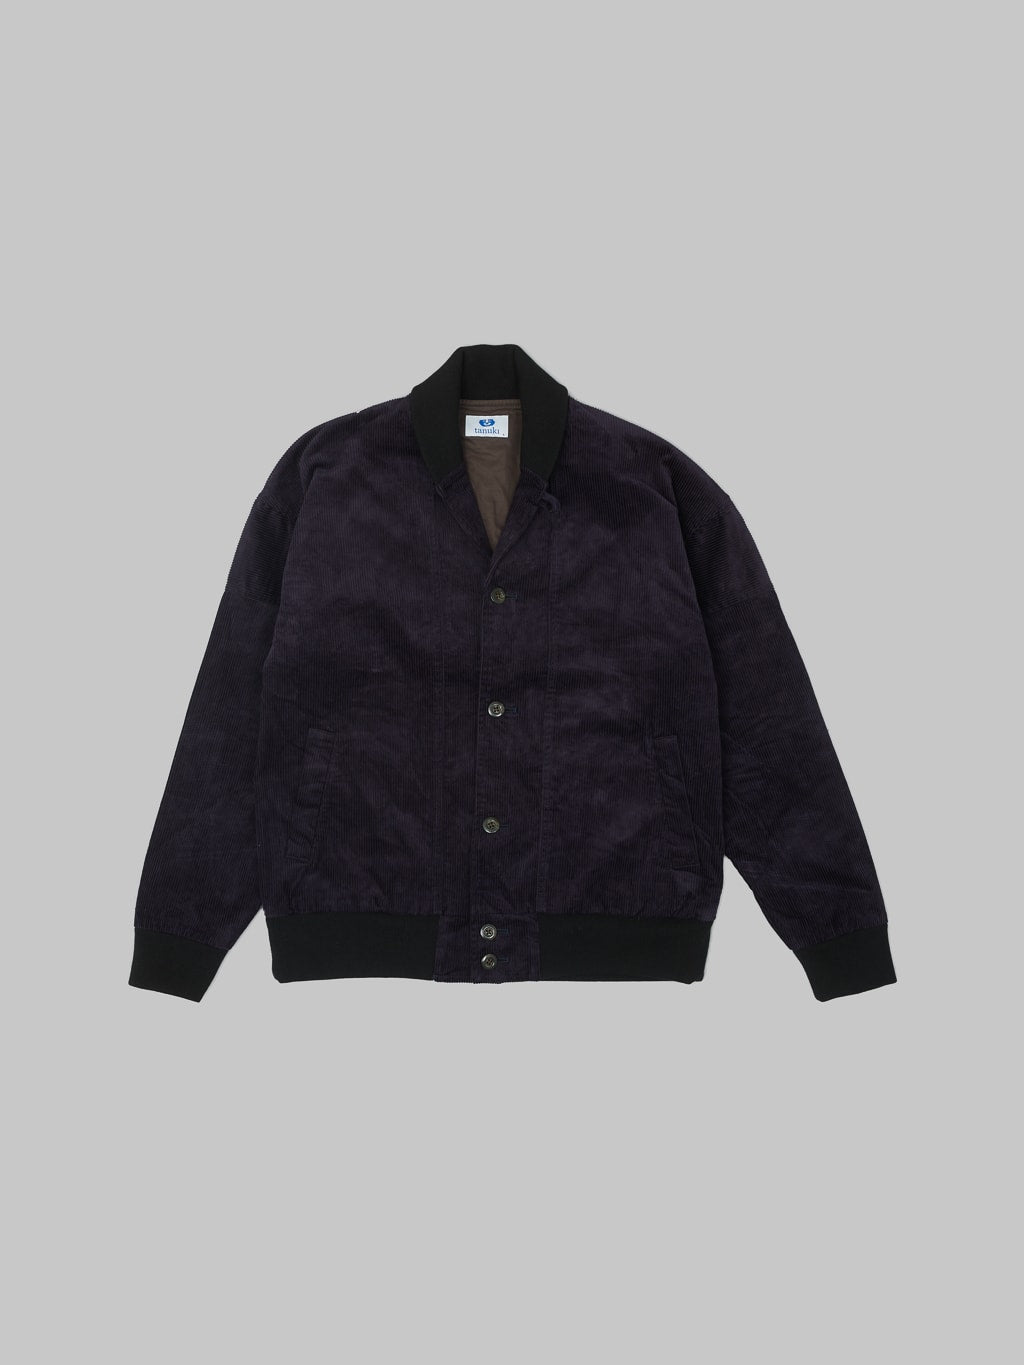 Tanuki Sazanami Corduroy natural indigo dyed Jacket front made in japan